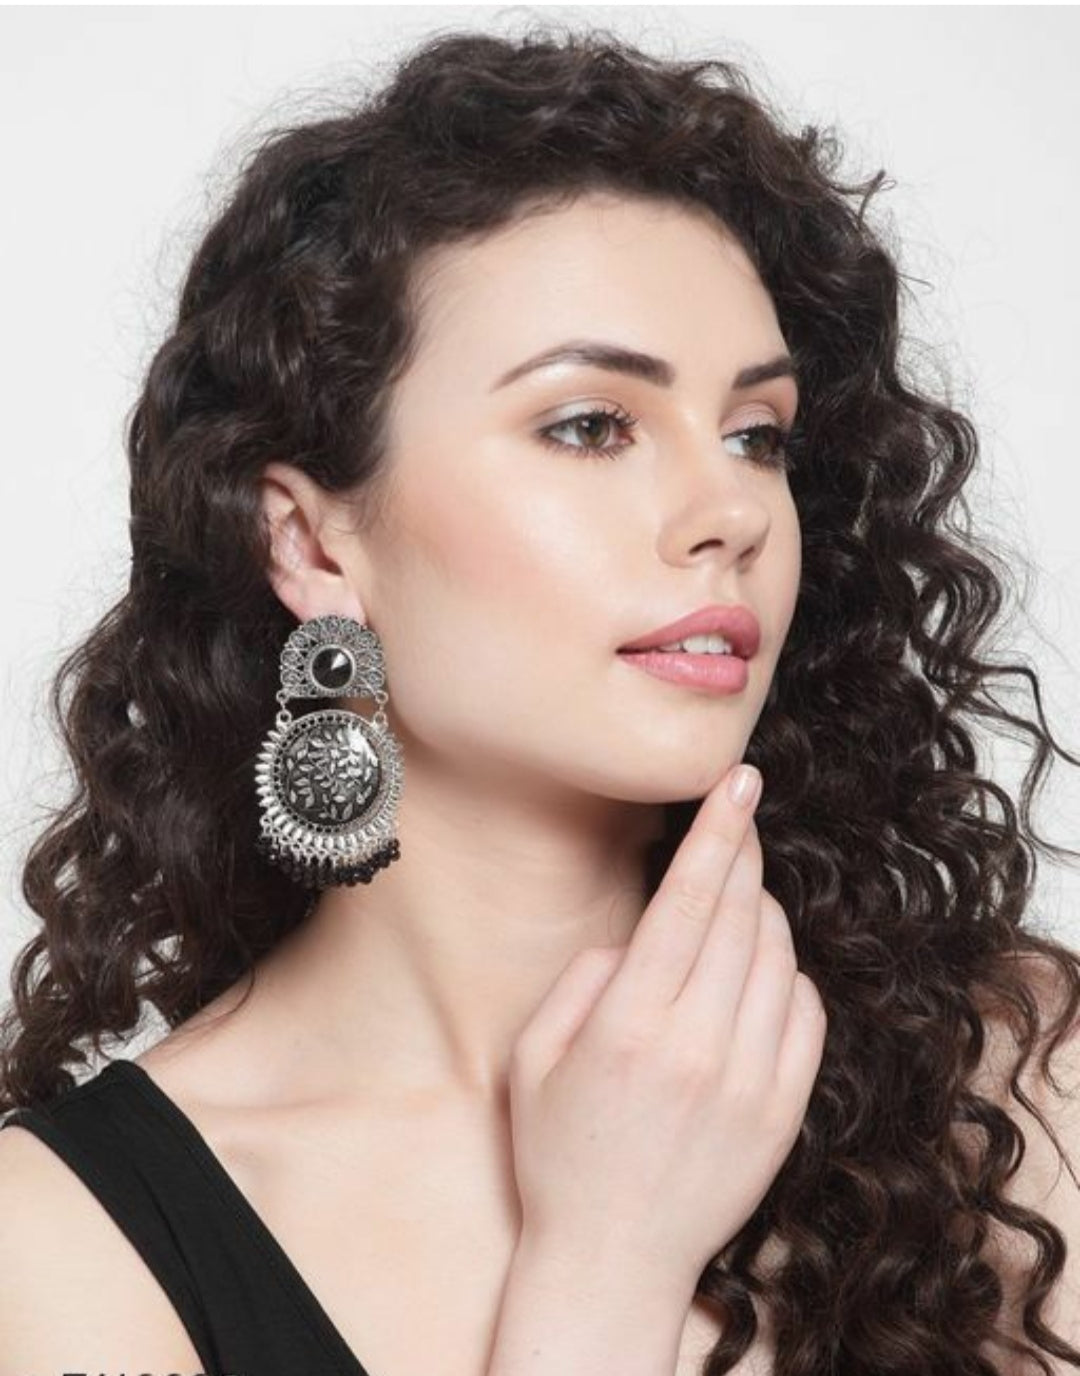 Gloria Oxidised Crystal Earrings Plus Ring (Combo).